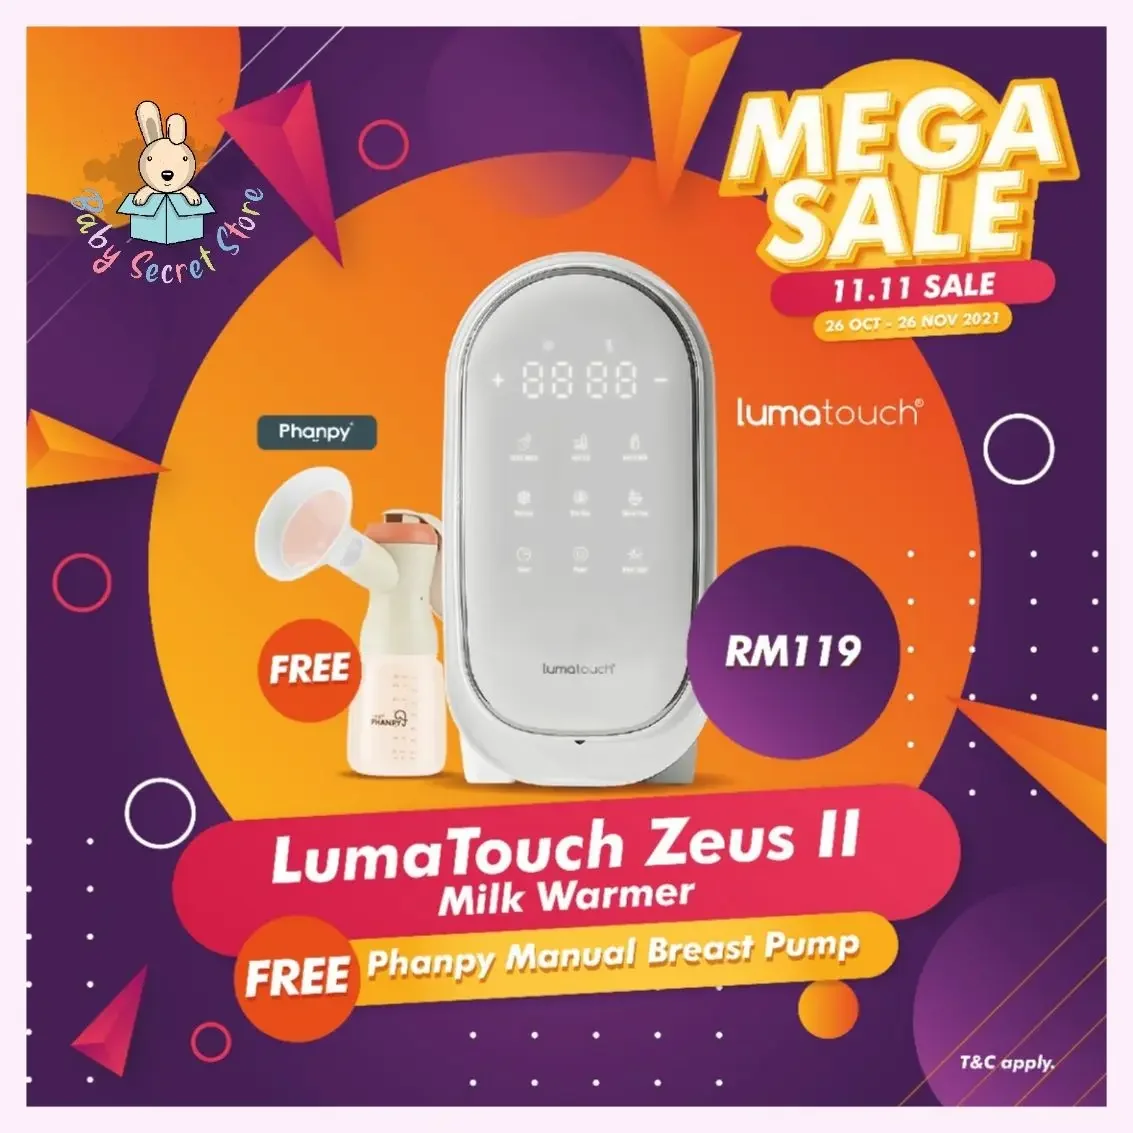 [NEW] Lumatouch Zeus II Baby Multifunction Milk Warmer